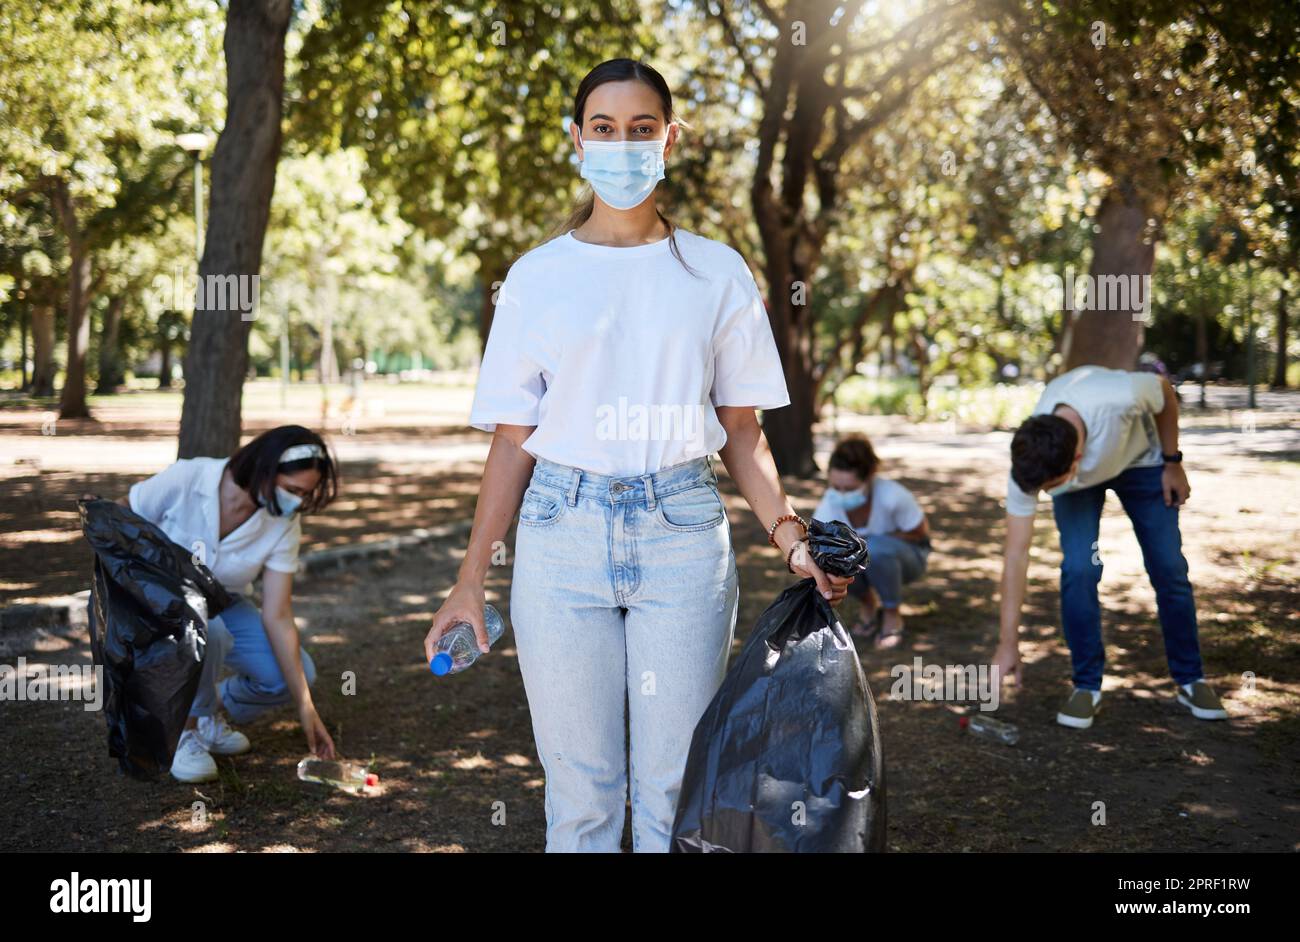 Covid, masque facial et travailleur bénévole nettoyant le parc, faisant le service communautaire et aidant à ramasser les déchets et les bouteilles en plastique. Soutenir une équipe de militants du recyclage, travaillant ensemble pour mettre fin à la pollution Banque D'Images